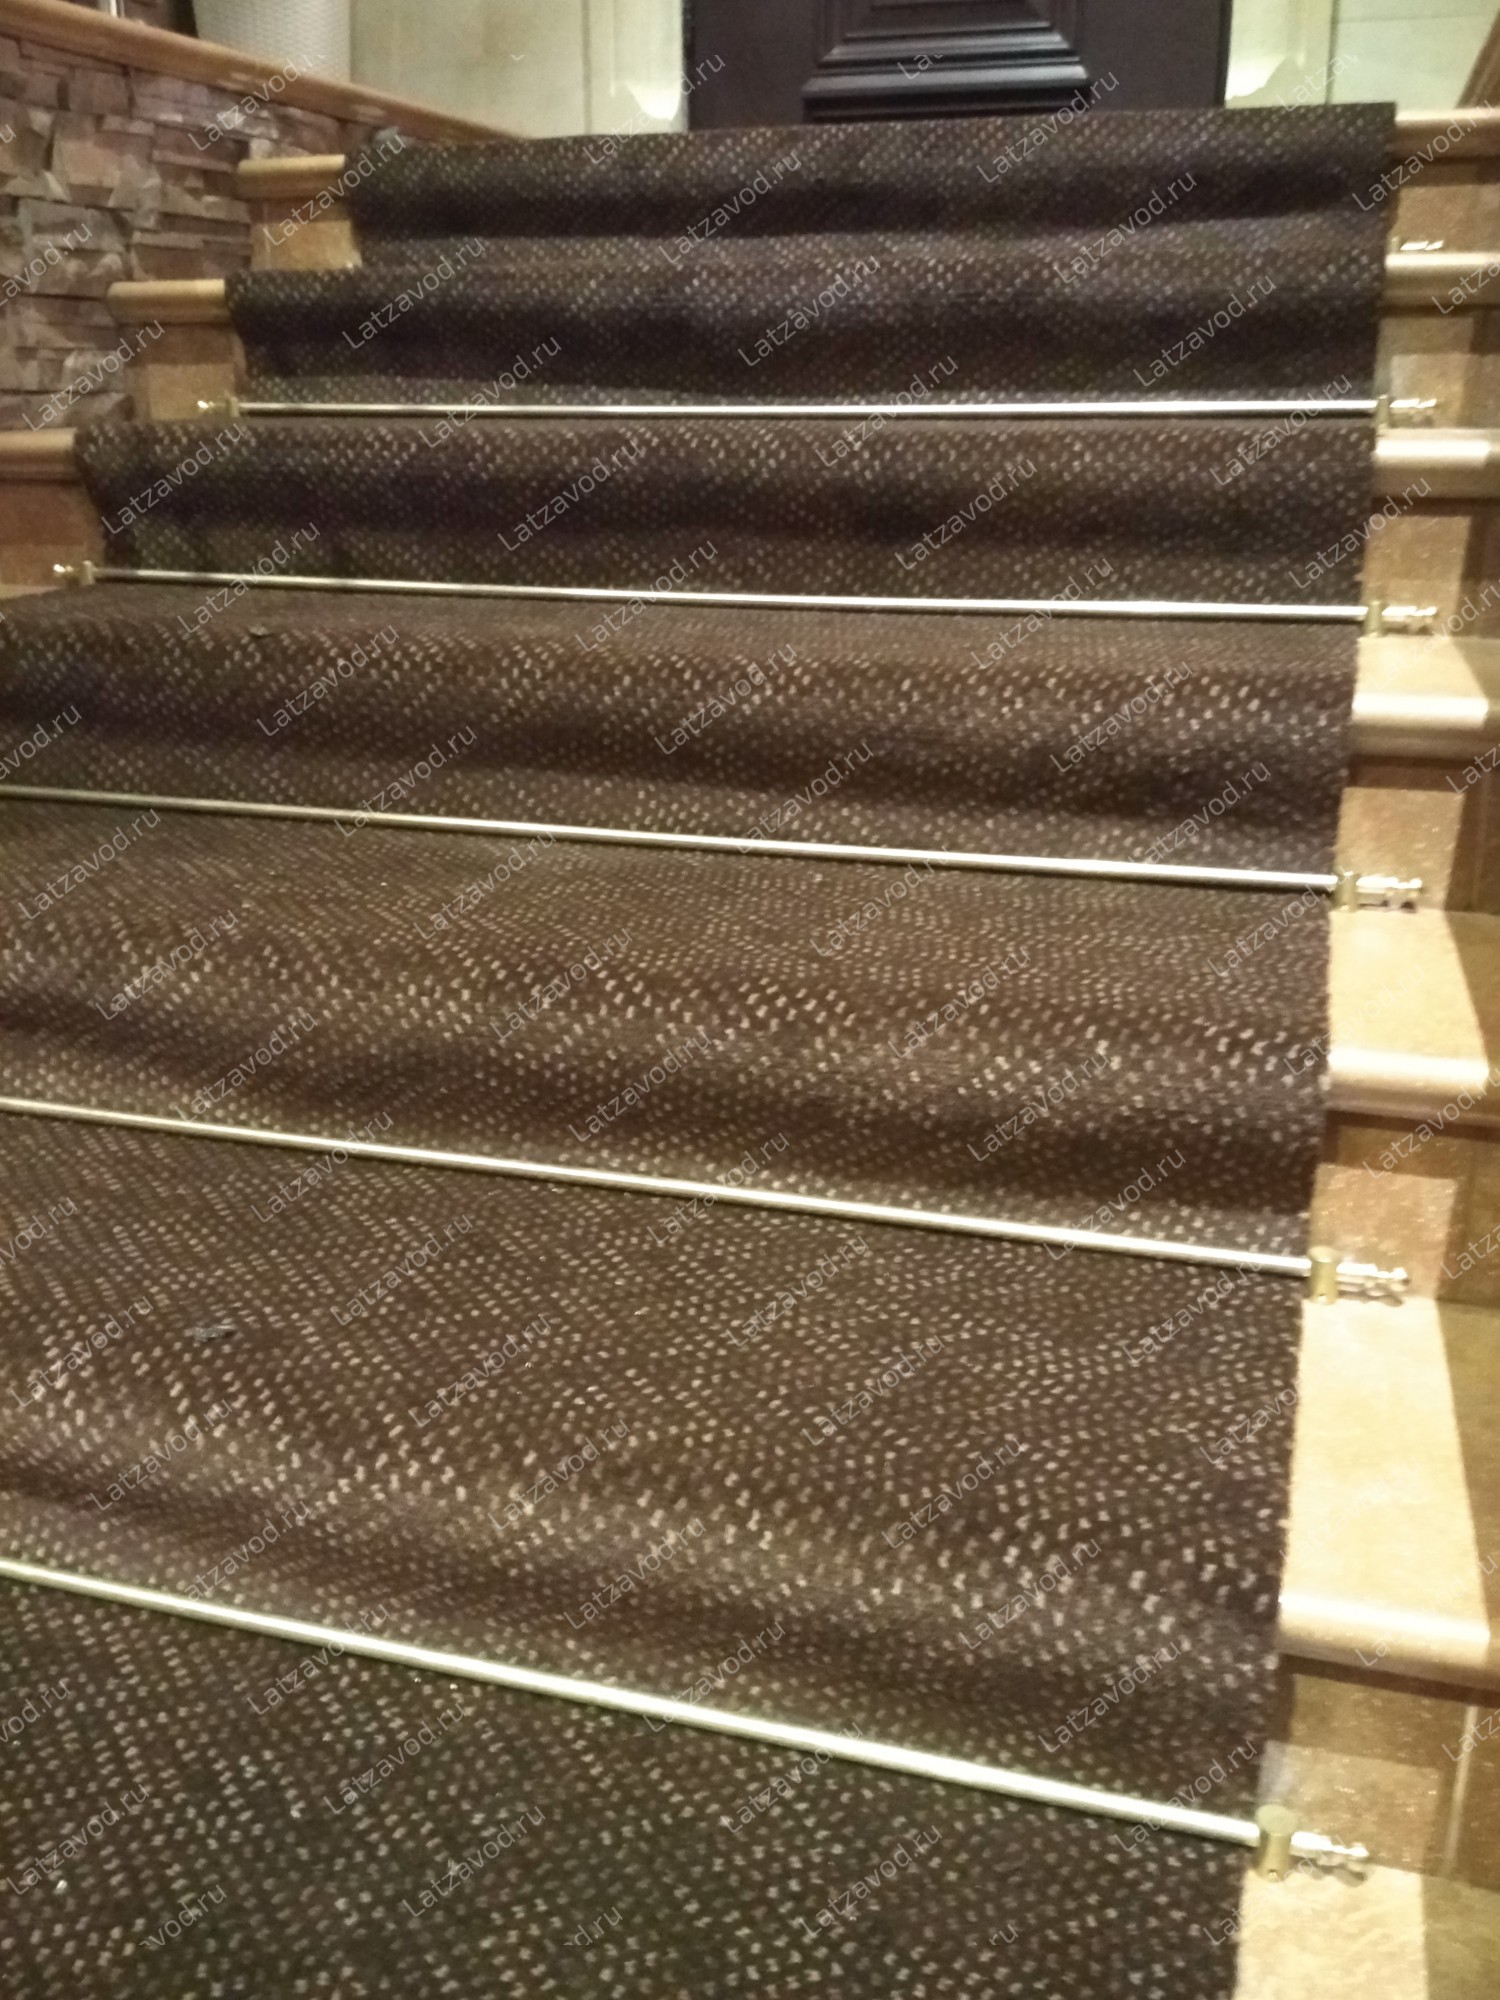 Купить ковролин на облицованную плиткой лестницу